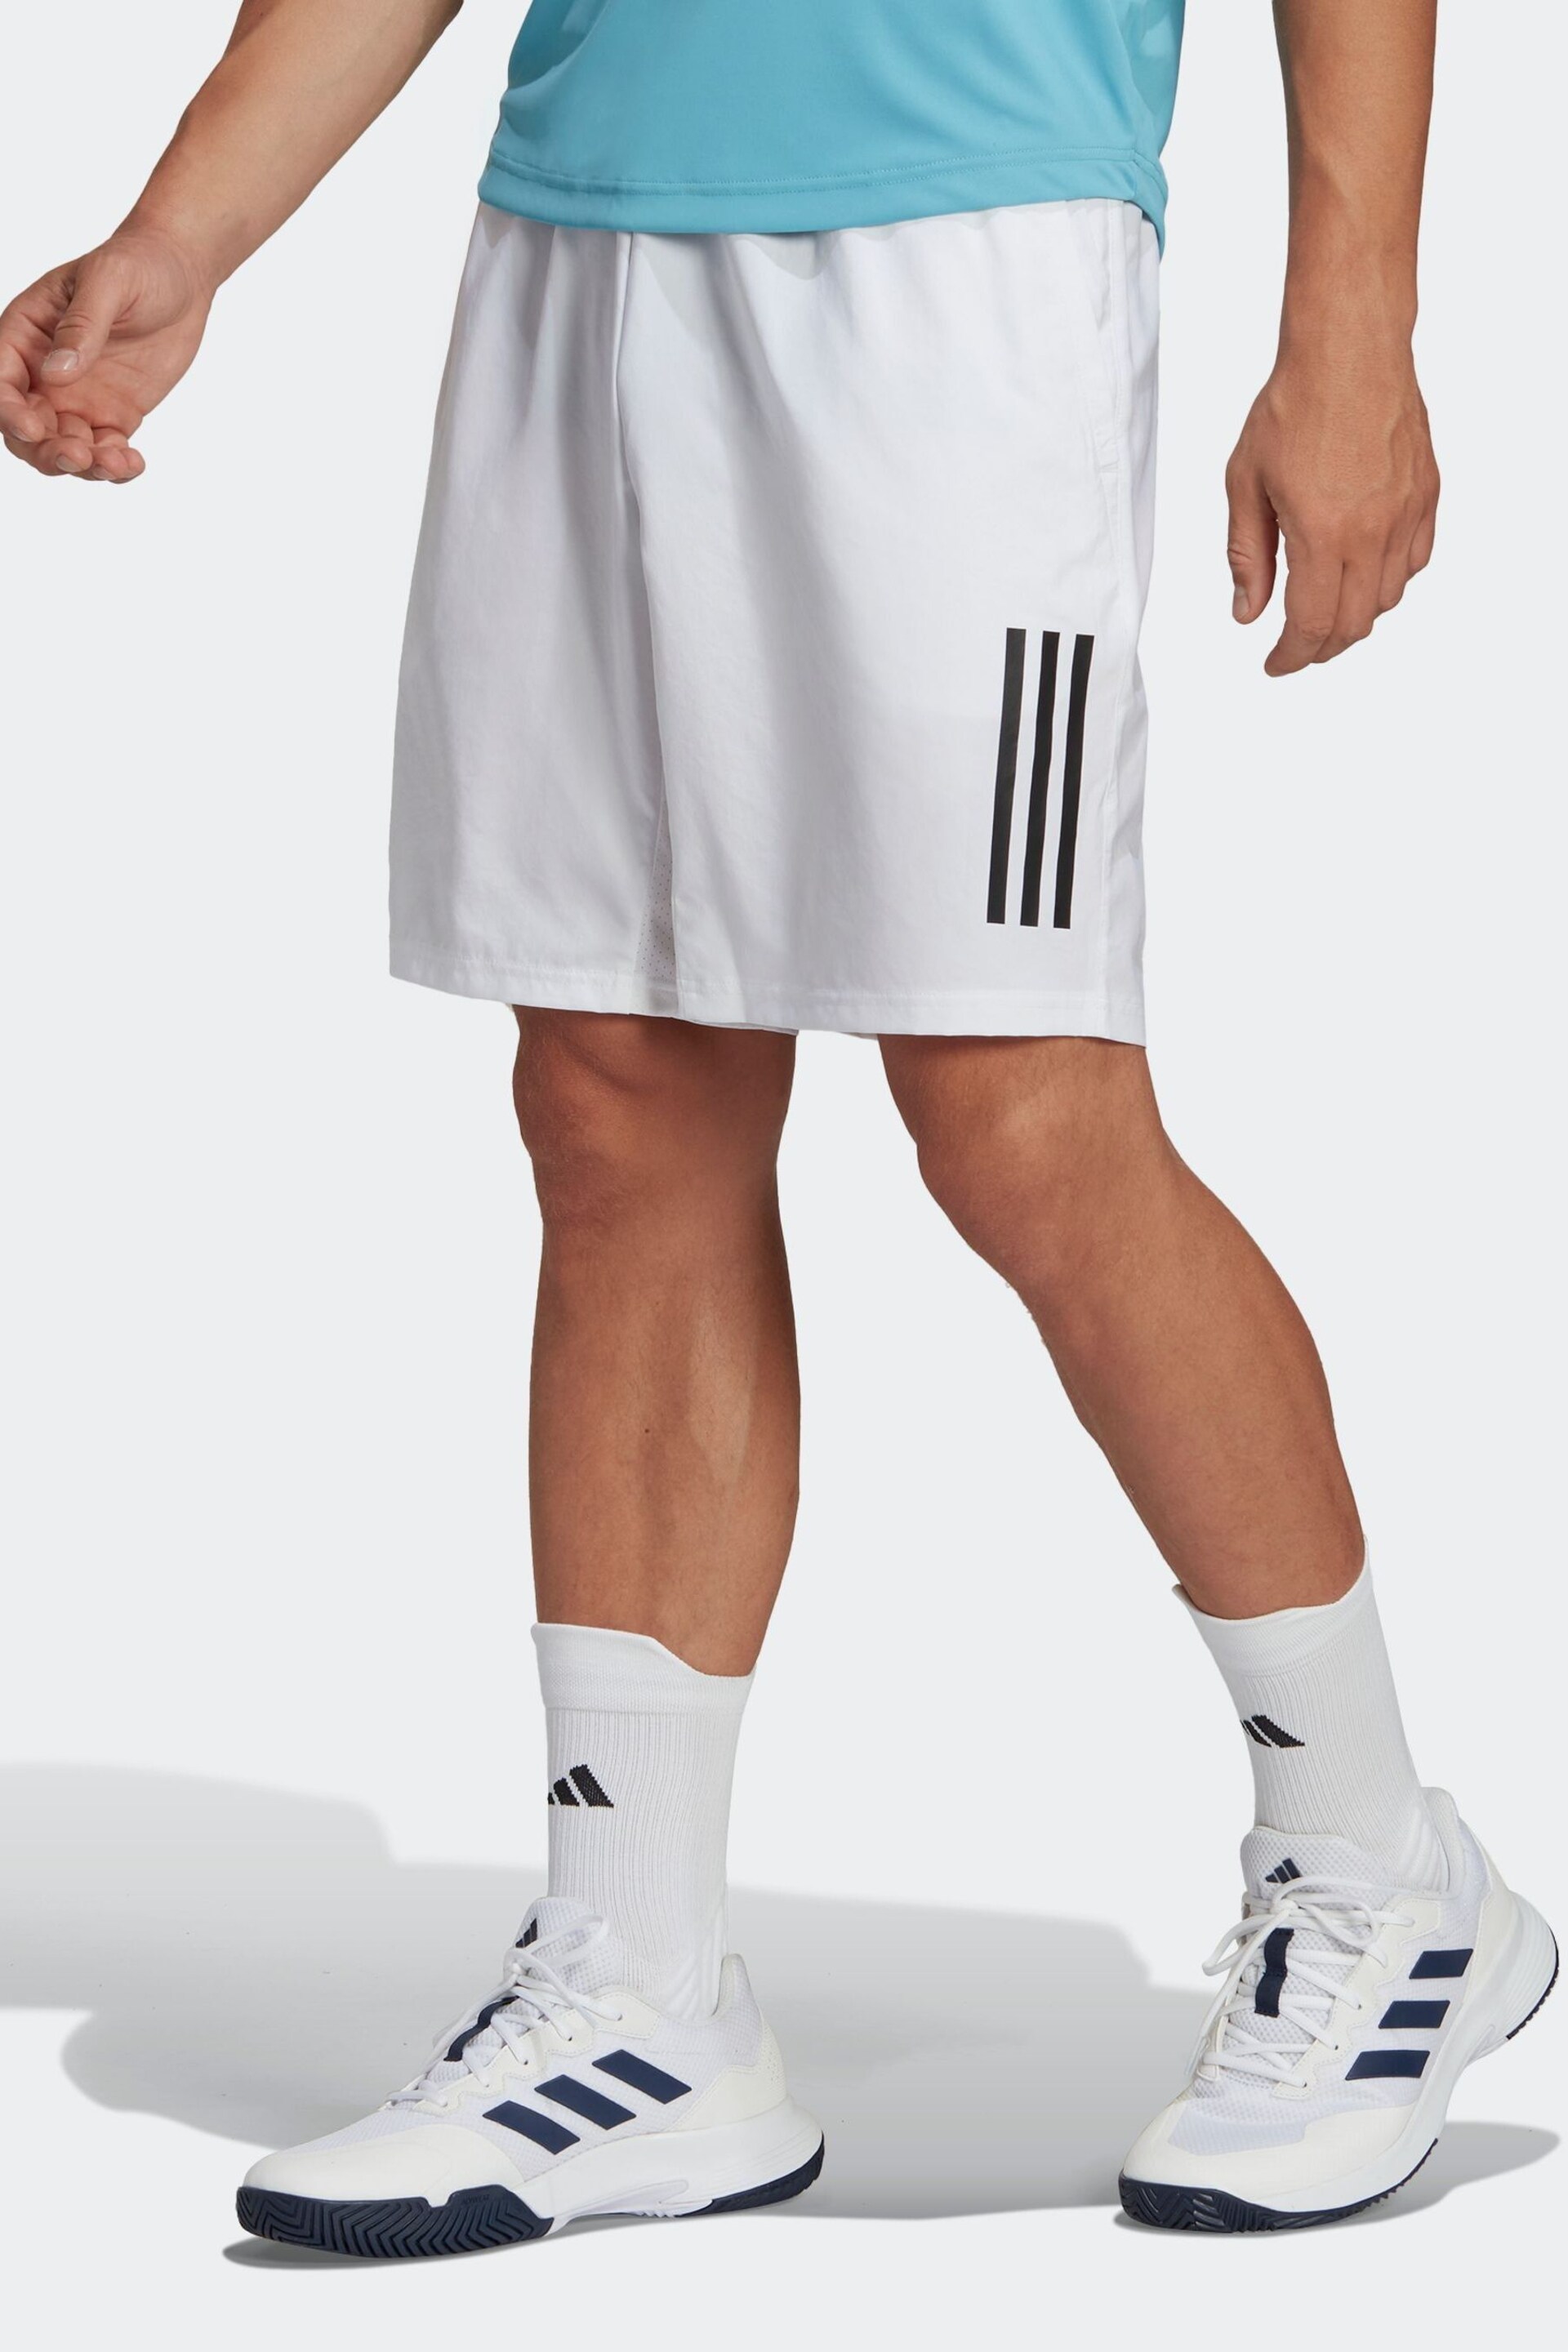 adidas White Club 3-Stripes Tennis Shorts - Image 1 of 6